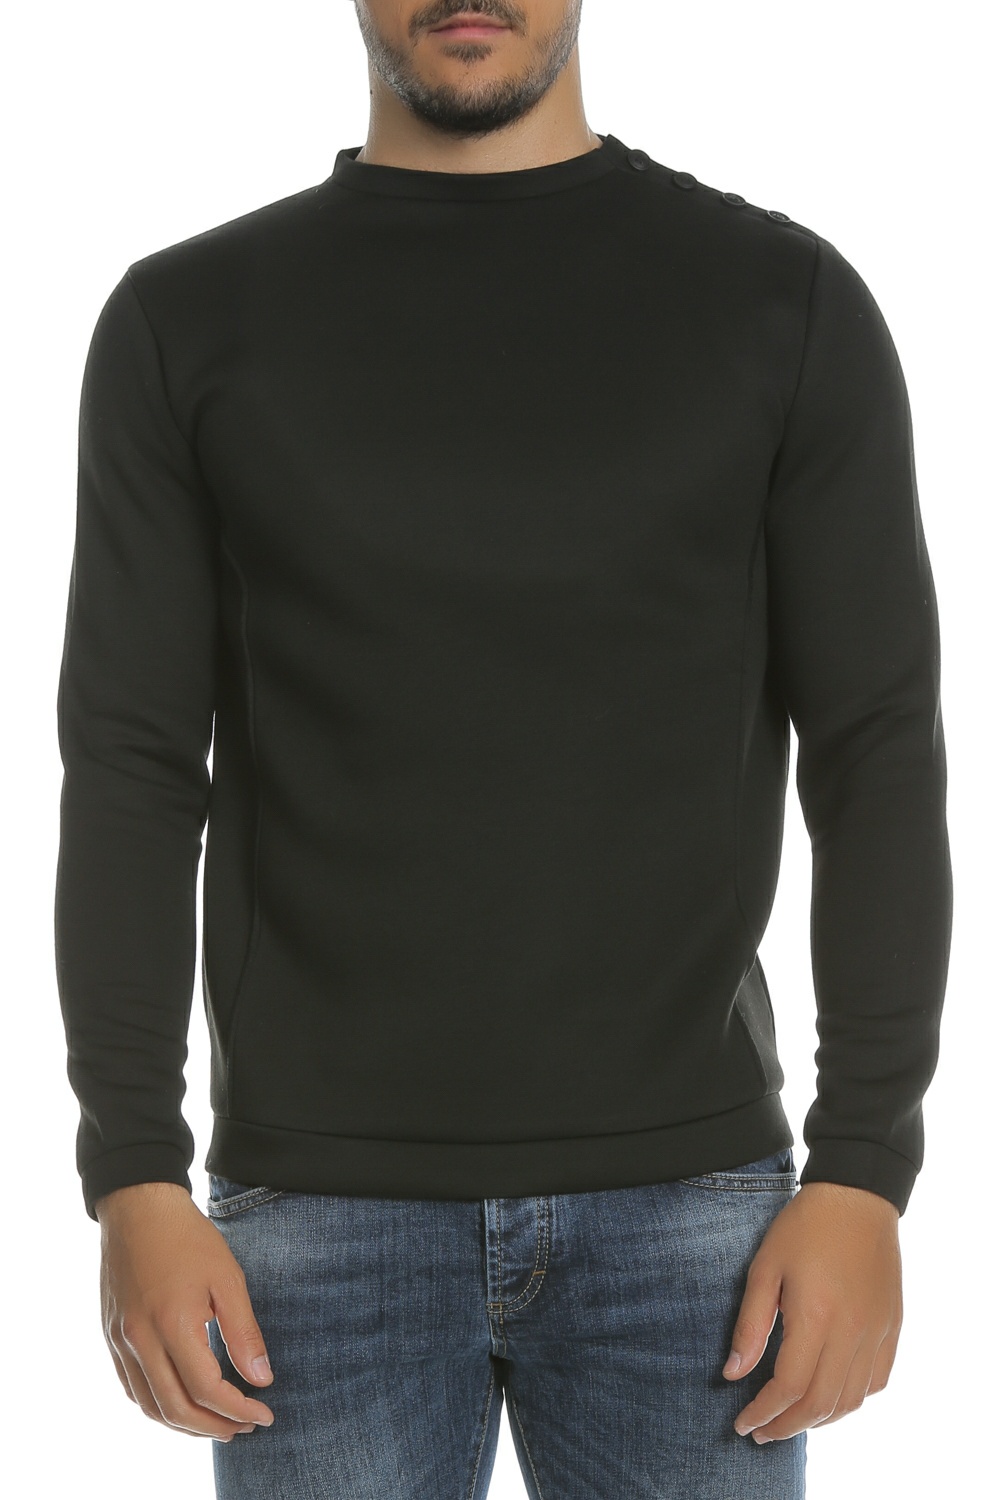 Ανδρικά/Ρούχα/Μπλούζες/Μακρυμάνικες HAMAKI - Ανδρική μπλούζα FELPA ΗΑΜΑΚΙ μαύρη